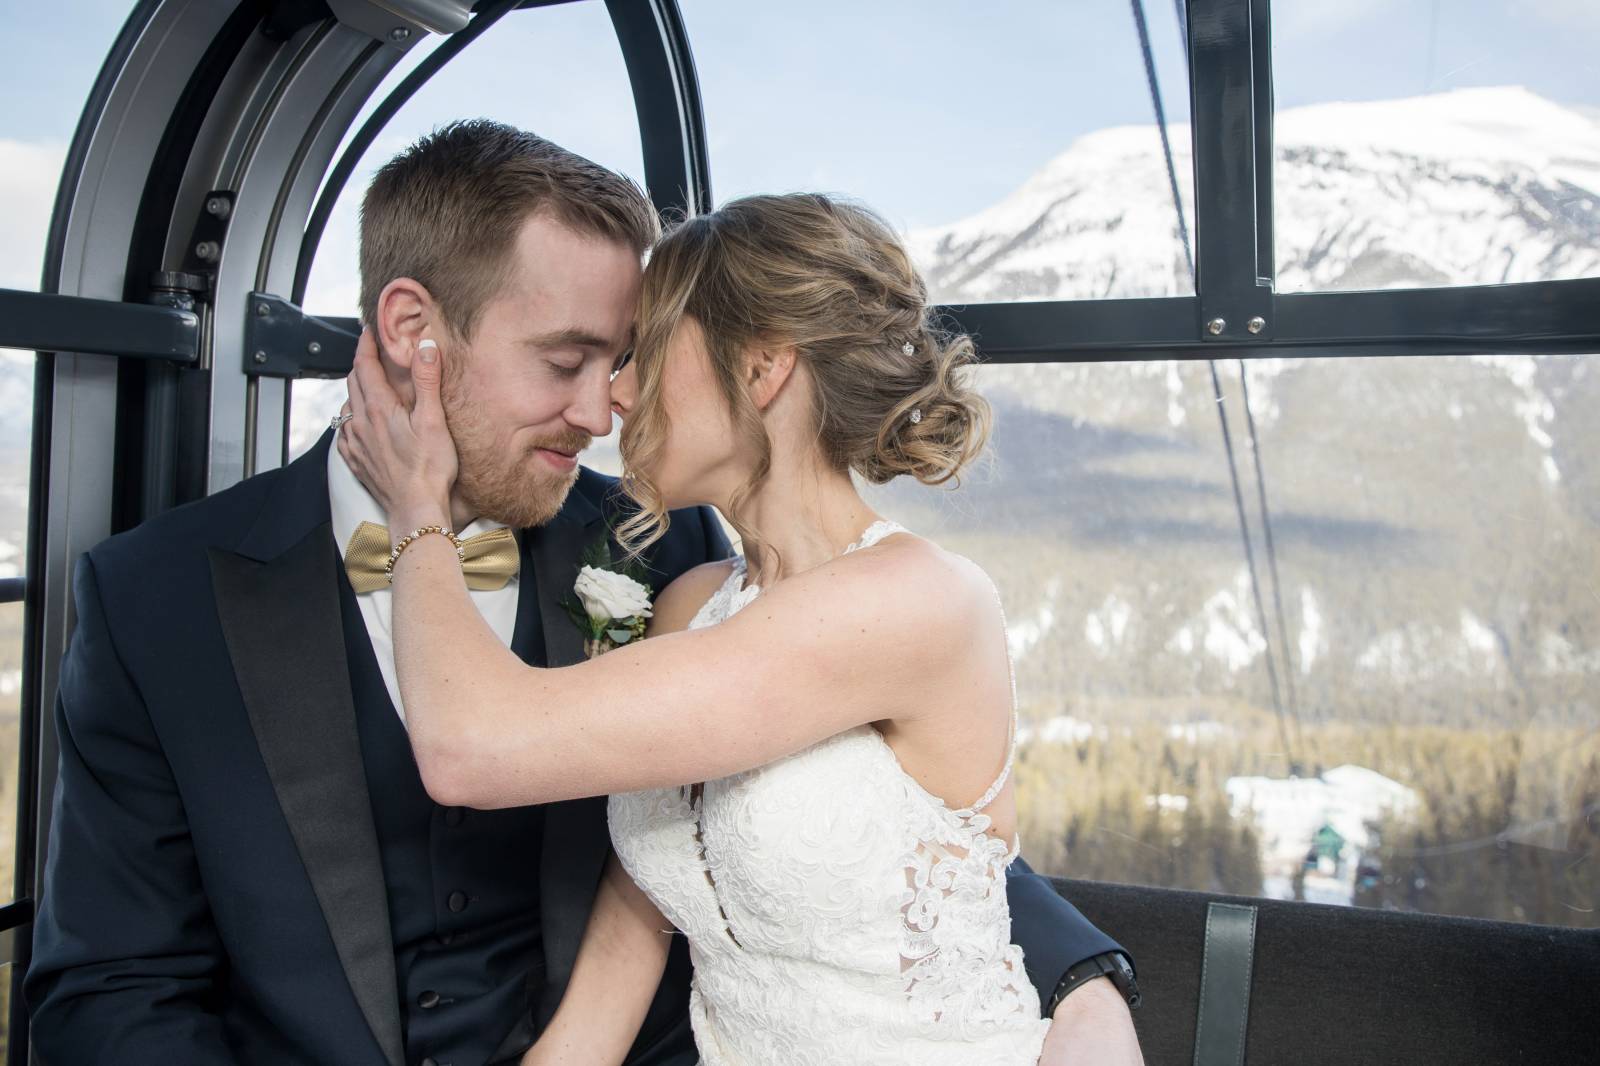 Banff Gondola Sky Bistro Wedding Ceremony, Outdoor wedding ceremony, mountaintop ceremony, banff wed